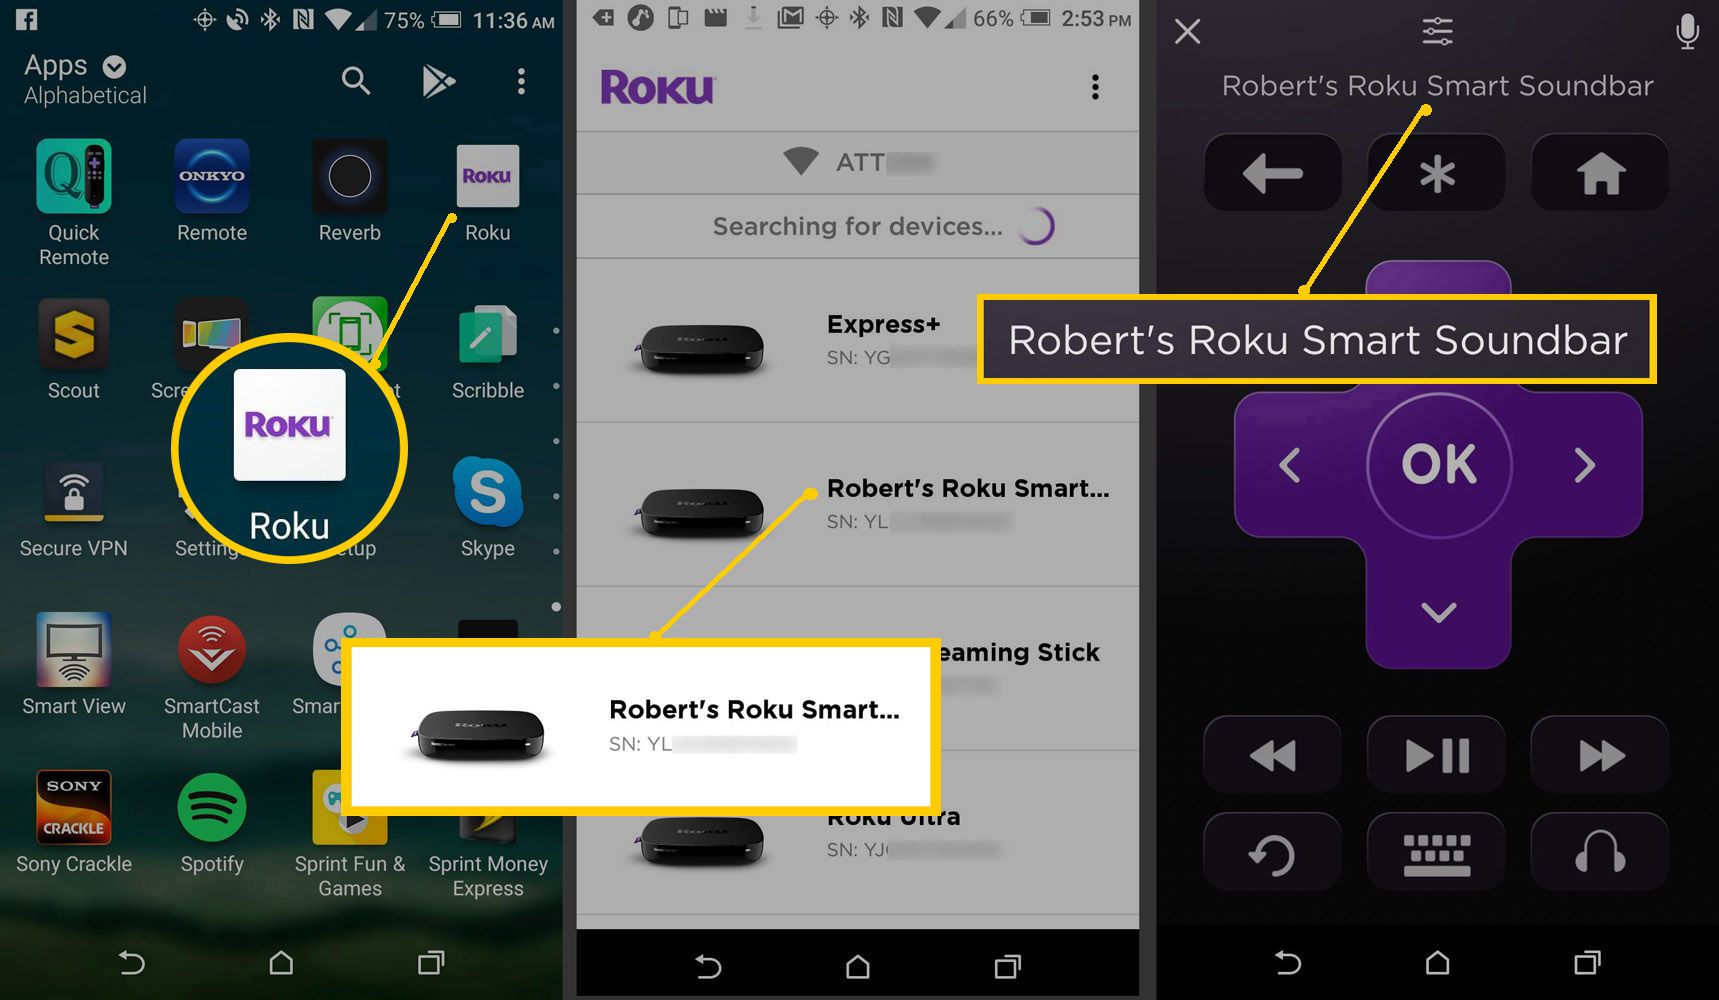 Roku Mobile App - Selecione Roku Soundbar